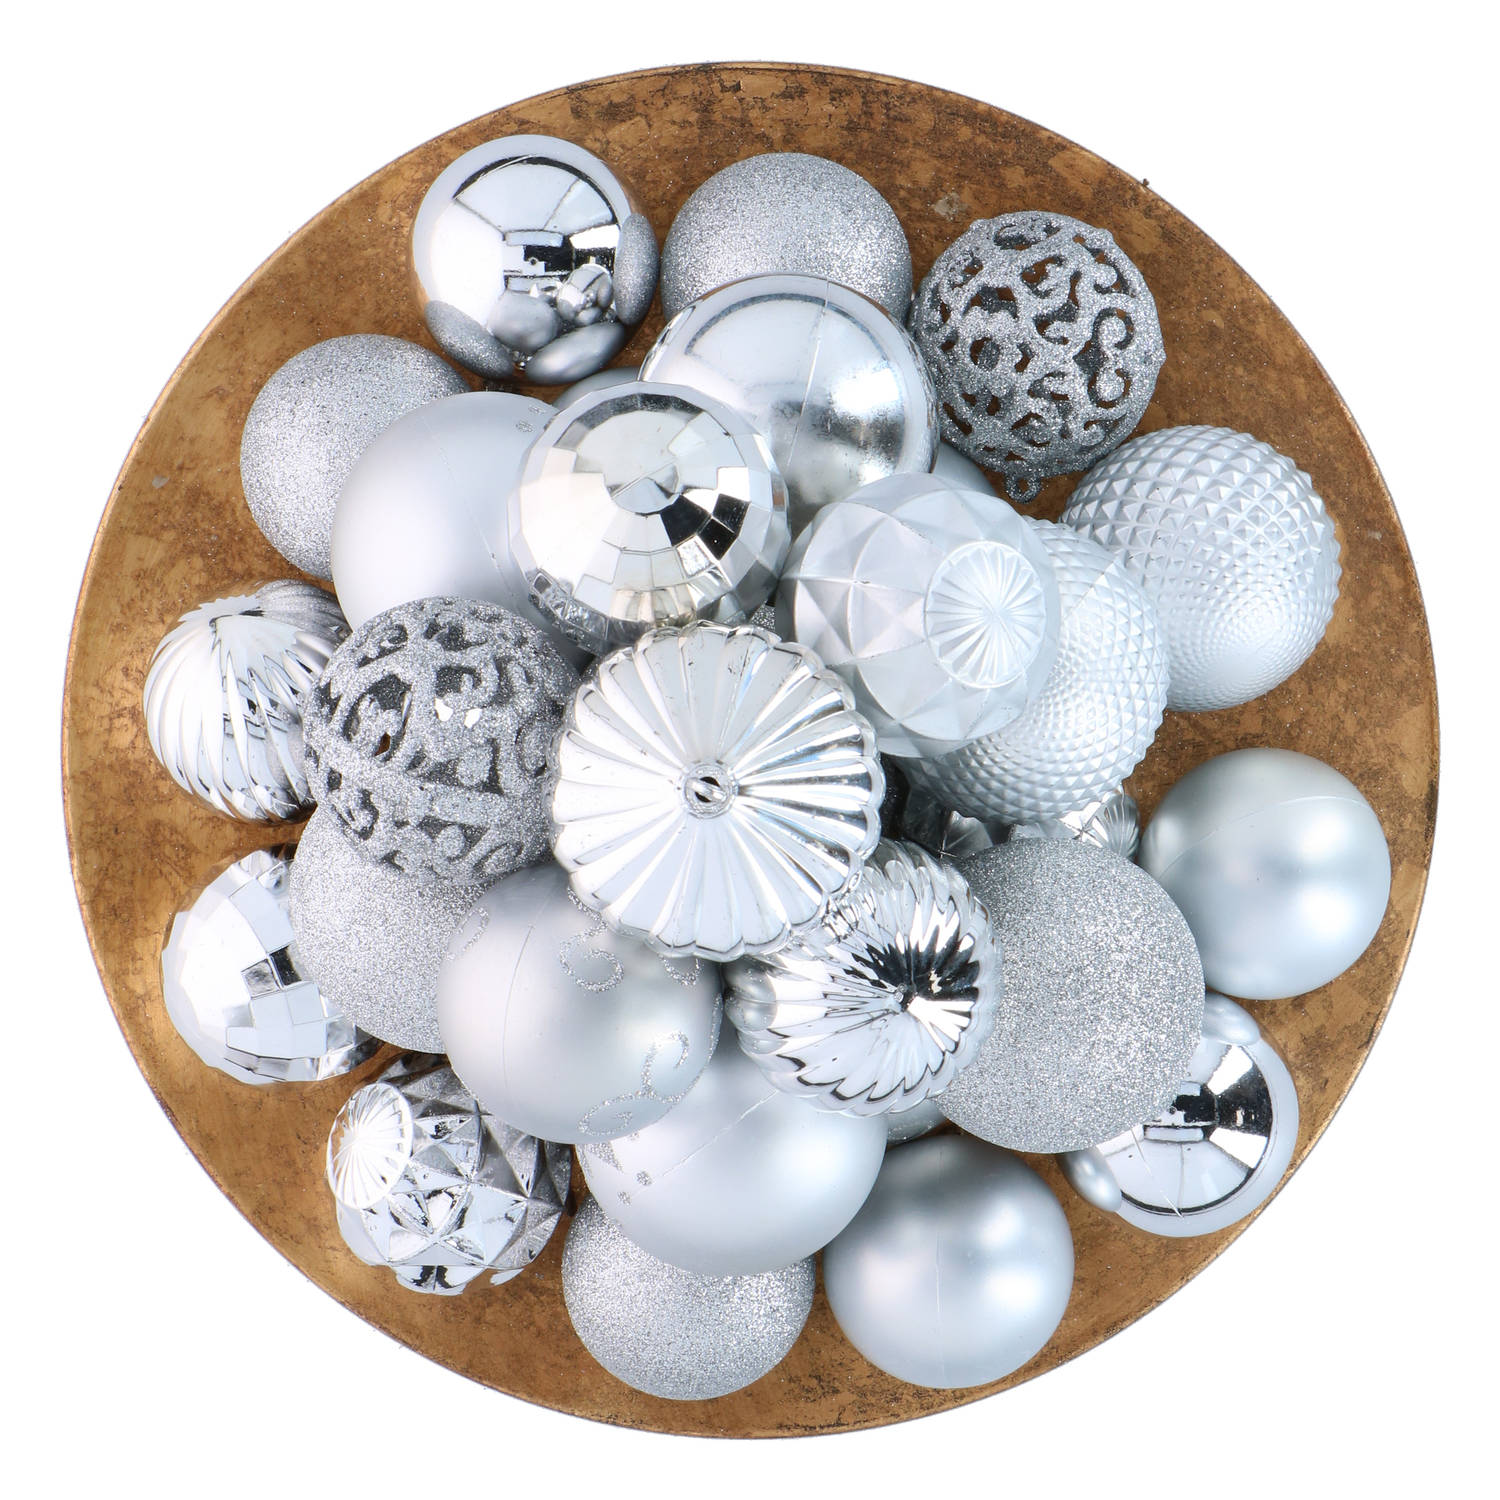 Giftsome ZilverenKersballen Set - 60 Kunststof Kerstballen - Incl. Zilveren Piek - Kerst Decoratie - Ø6/7 cm